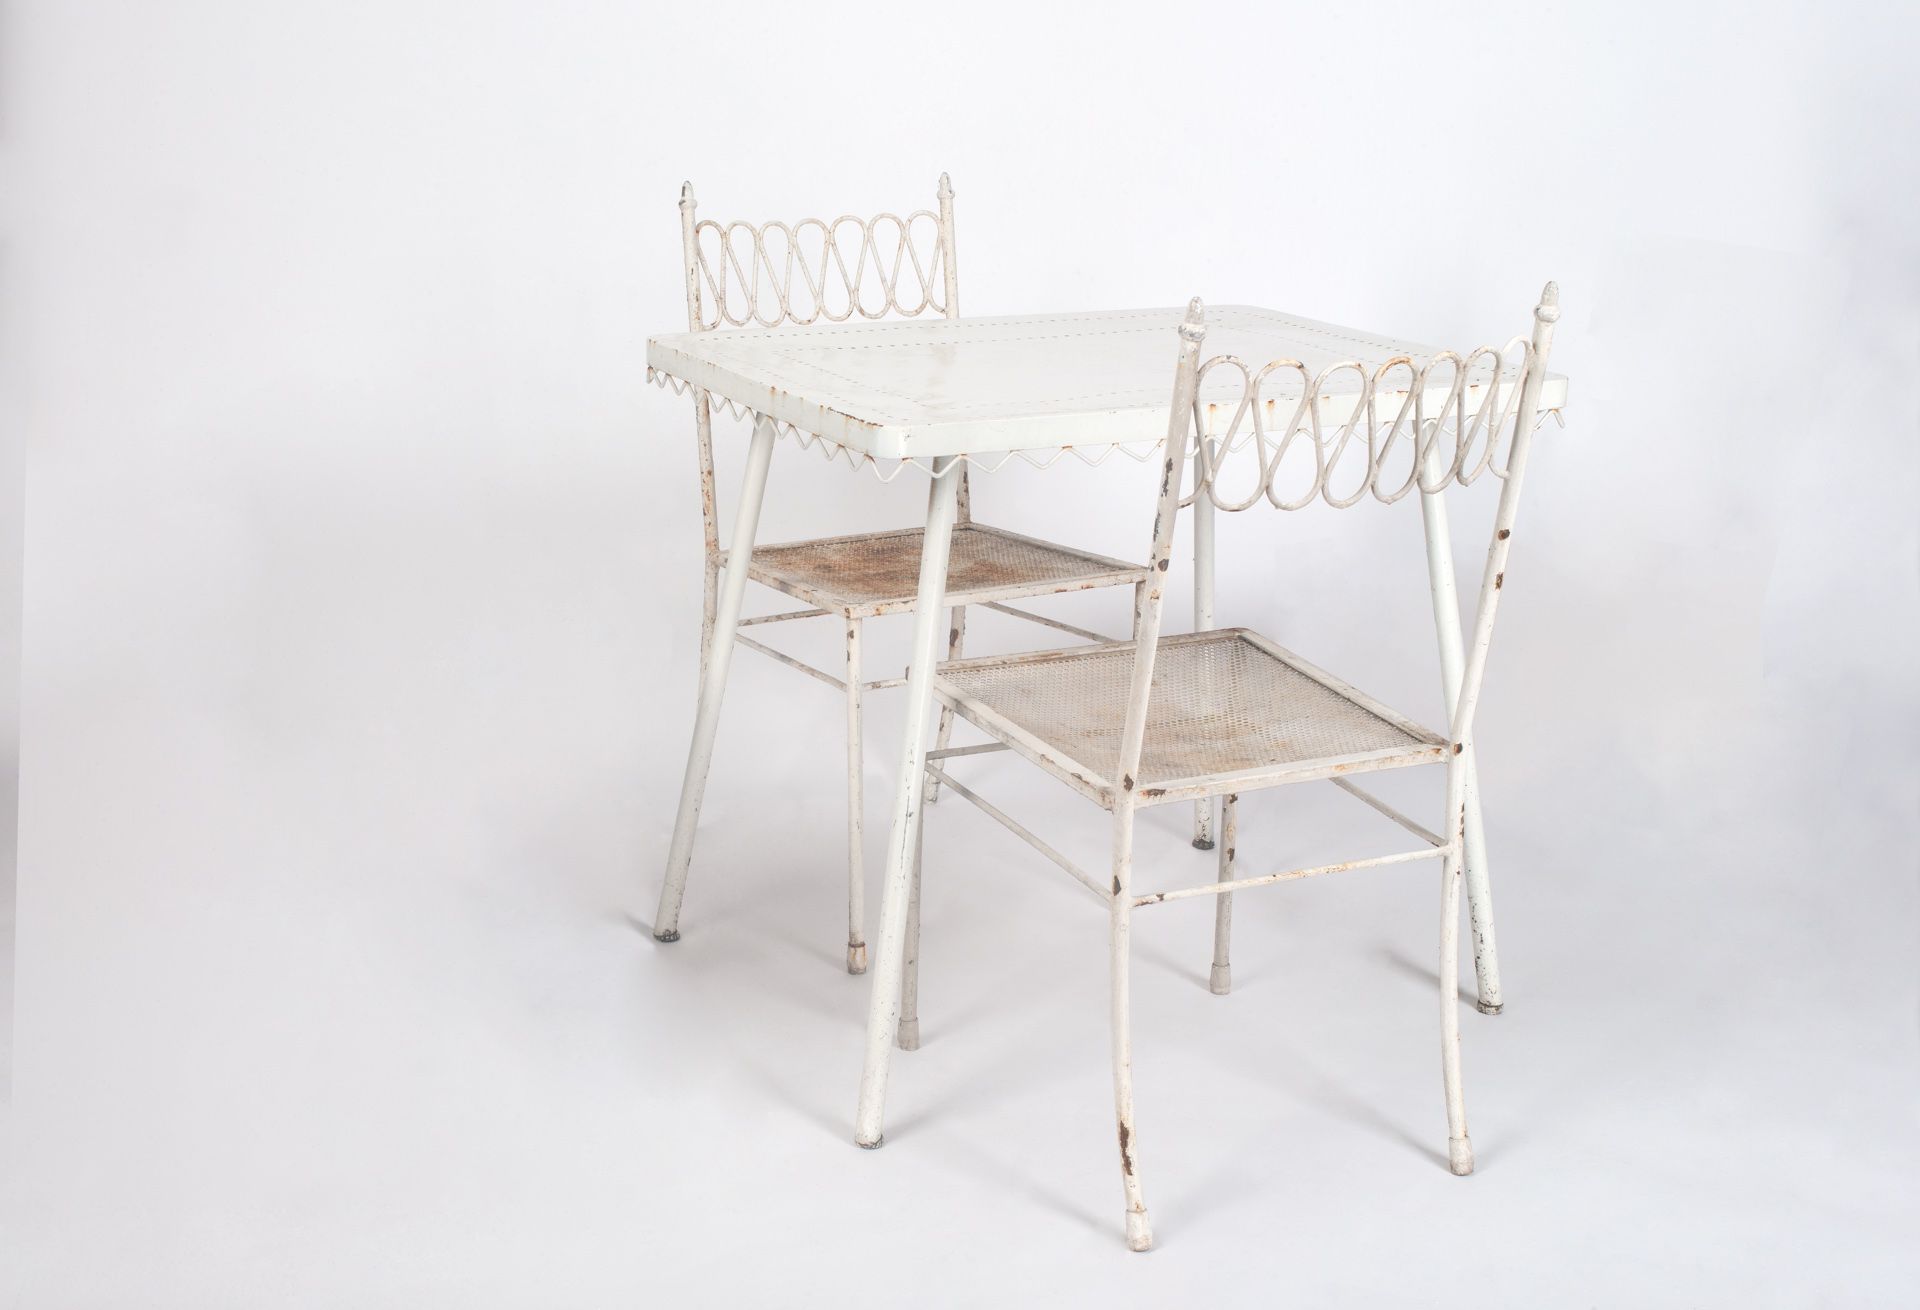 Italienische Manufaktur/Manifattura italiana - Tisch mit 2 Stühlen Hotel Bristol Meran, 1953/1954